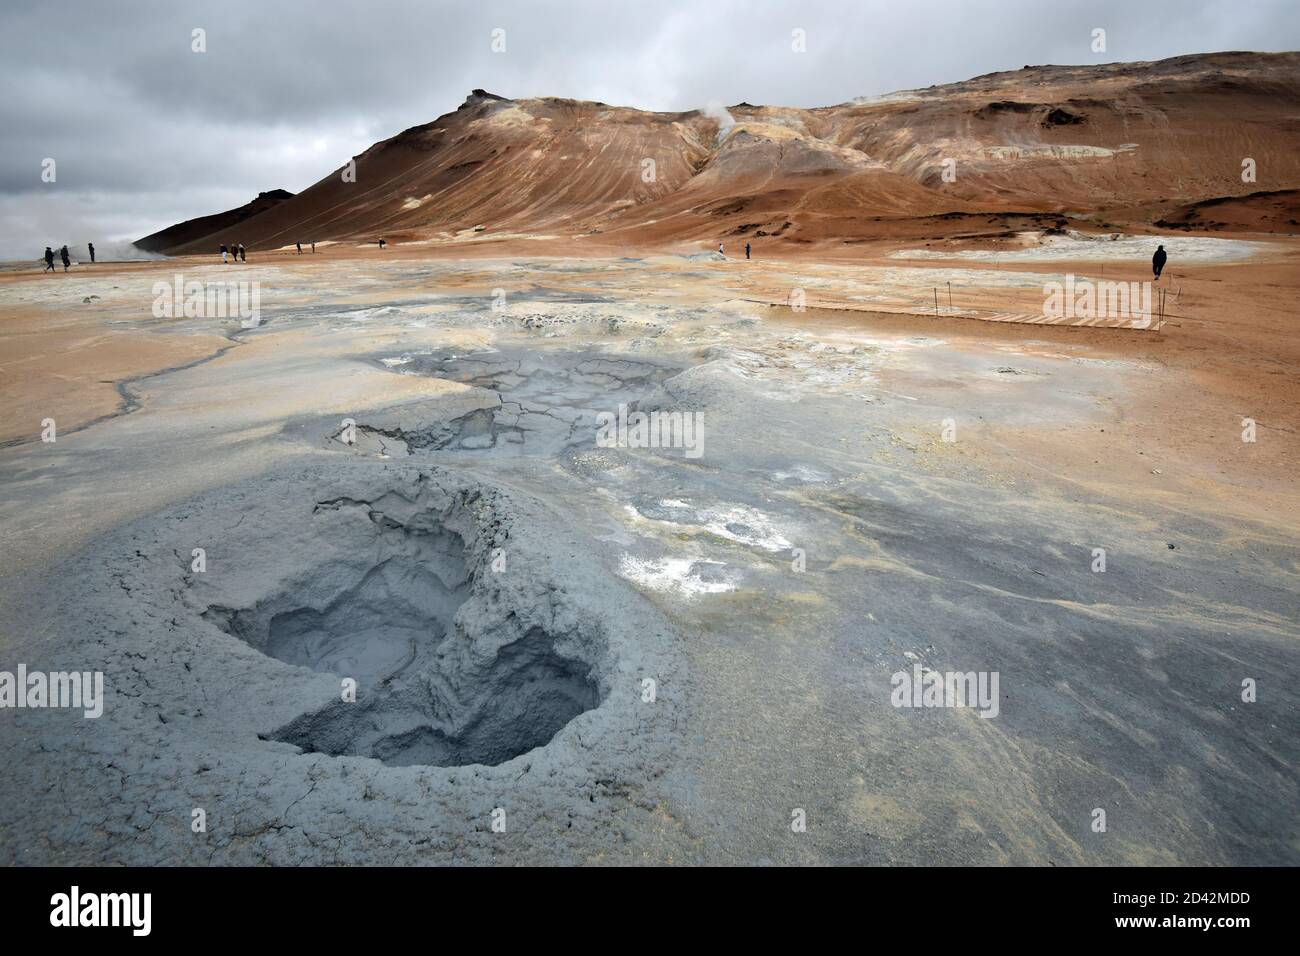 La montagna di Námafjall e l'area geotermica di Hverir vicino al lago Myvatn nel nord dell'Islanda. I visitatori camminano tra le piscine di fango grigio bollente e il paesaggio arancione. Foto Stock